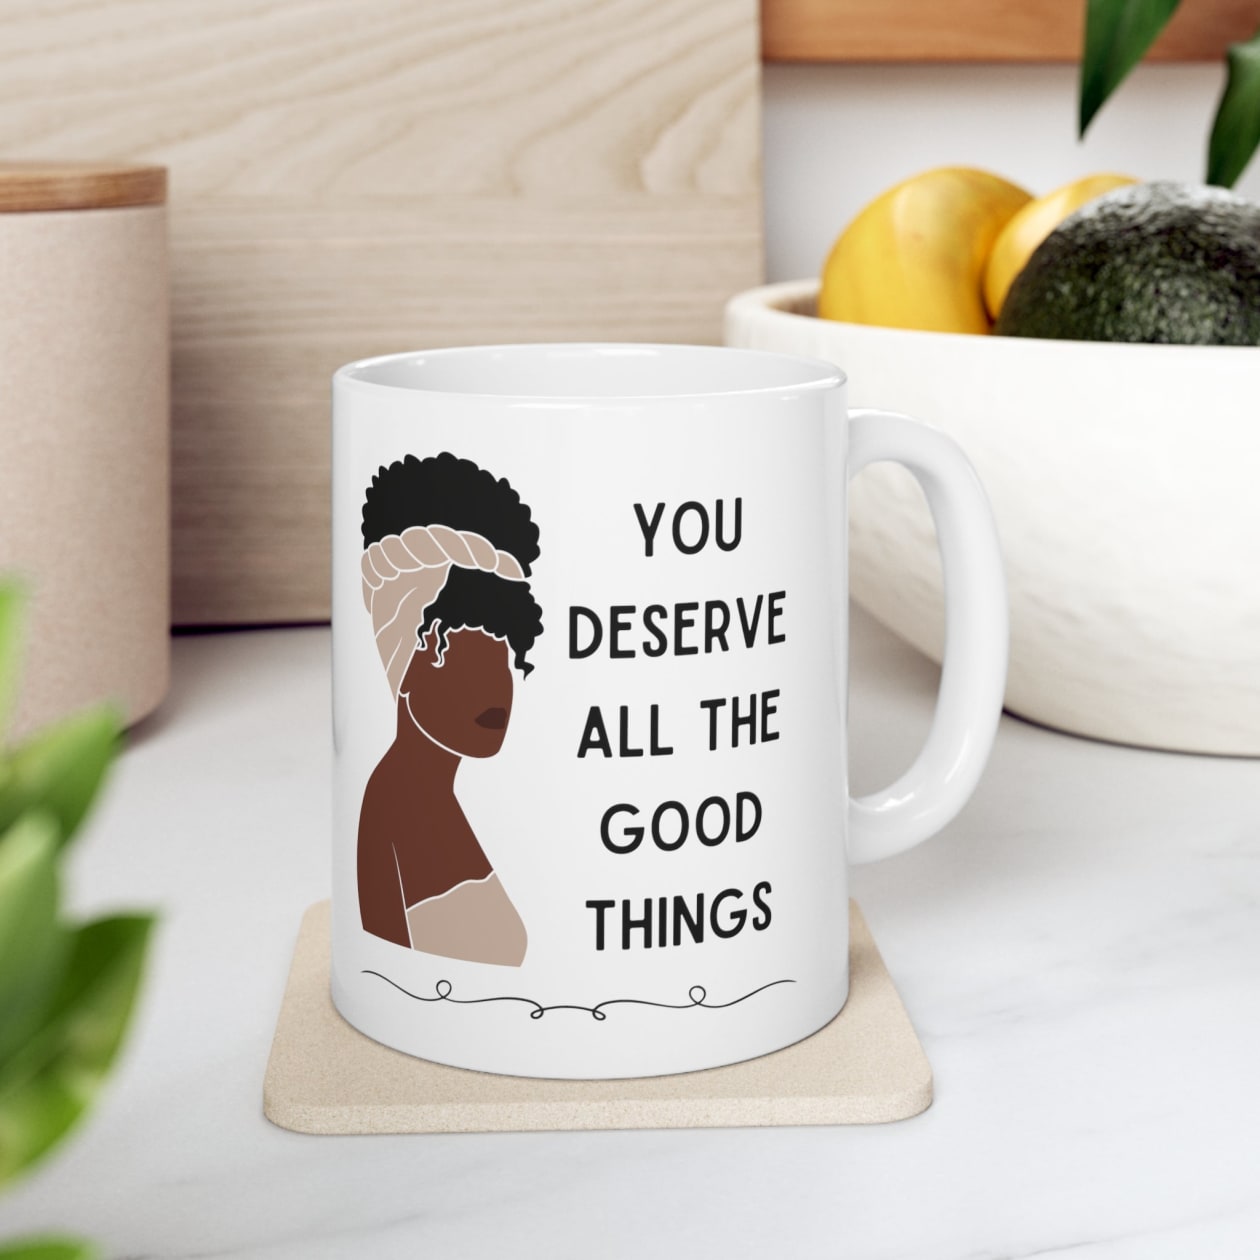 You Deserve All the Good Things Ceramic Mug 11oz - Size: 11oz